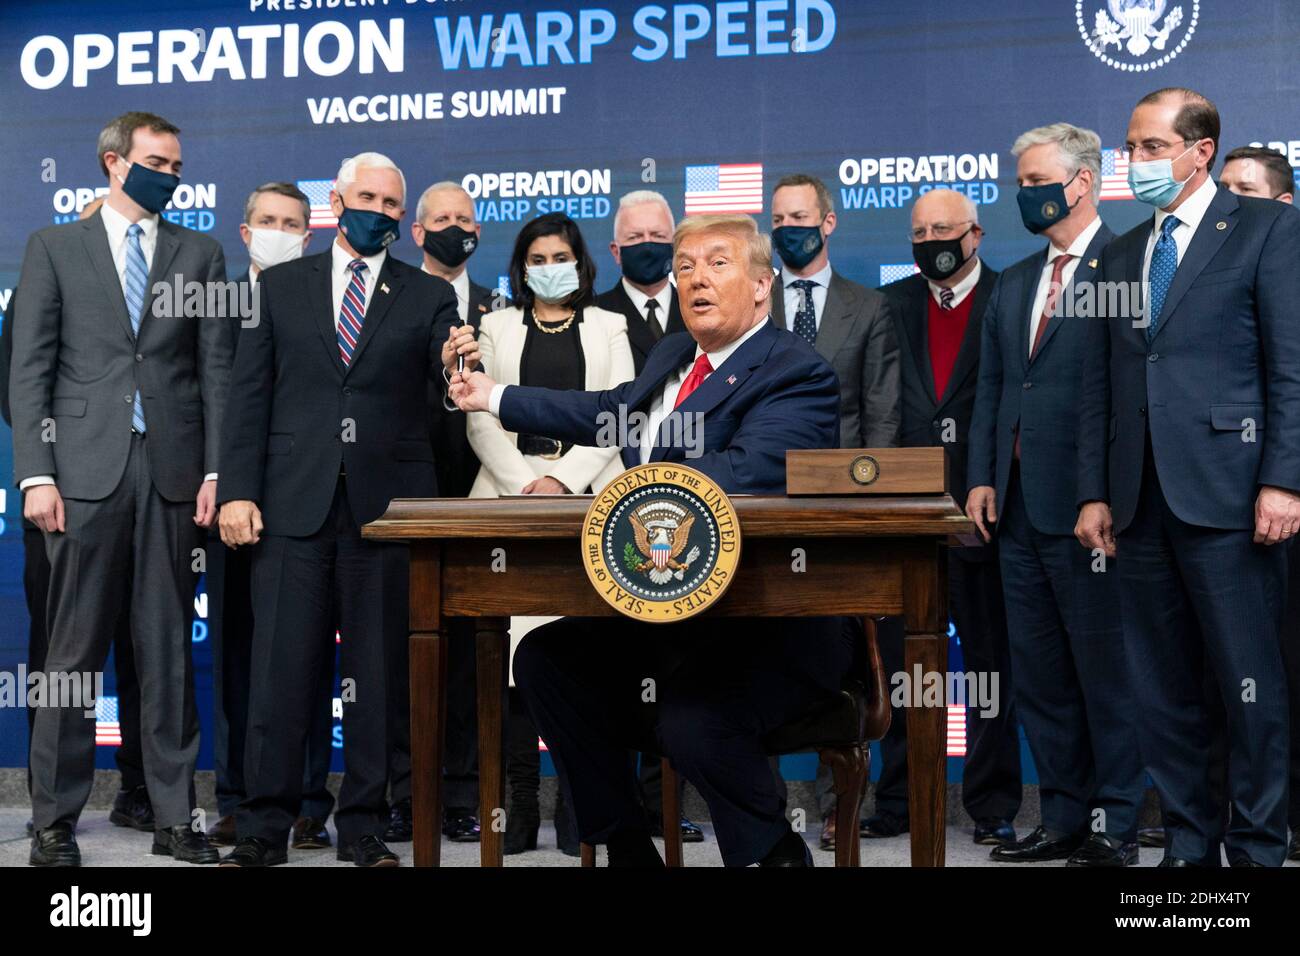 Le président américain Donald Trump, remet un stylo au vice-président Mike  Pence après avoir signé un décret exécutif sur l'accès aux vaccins lors du  sommet Operation Warp Speed Vaccine dans l'Auditorium de